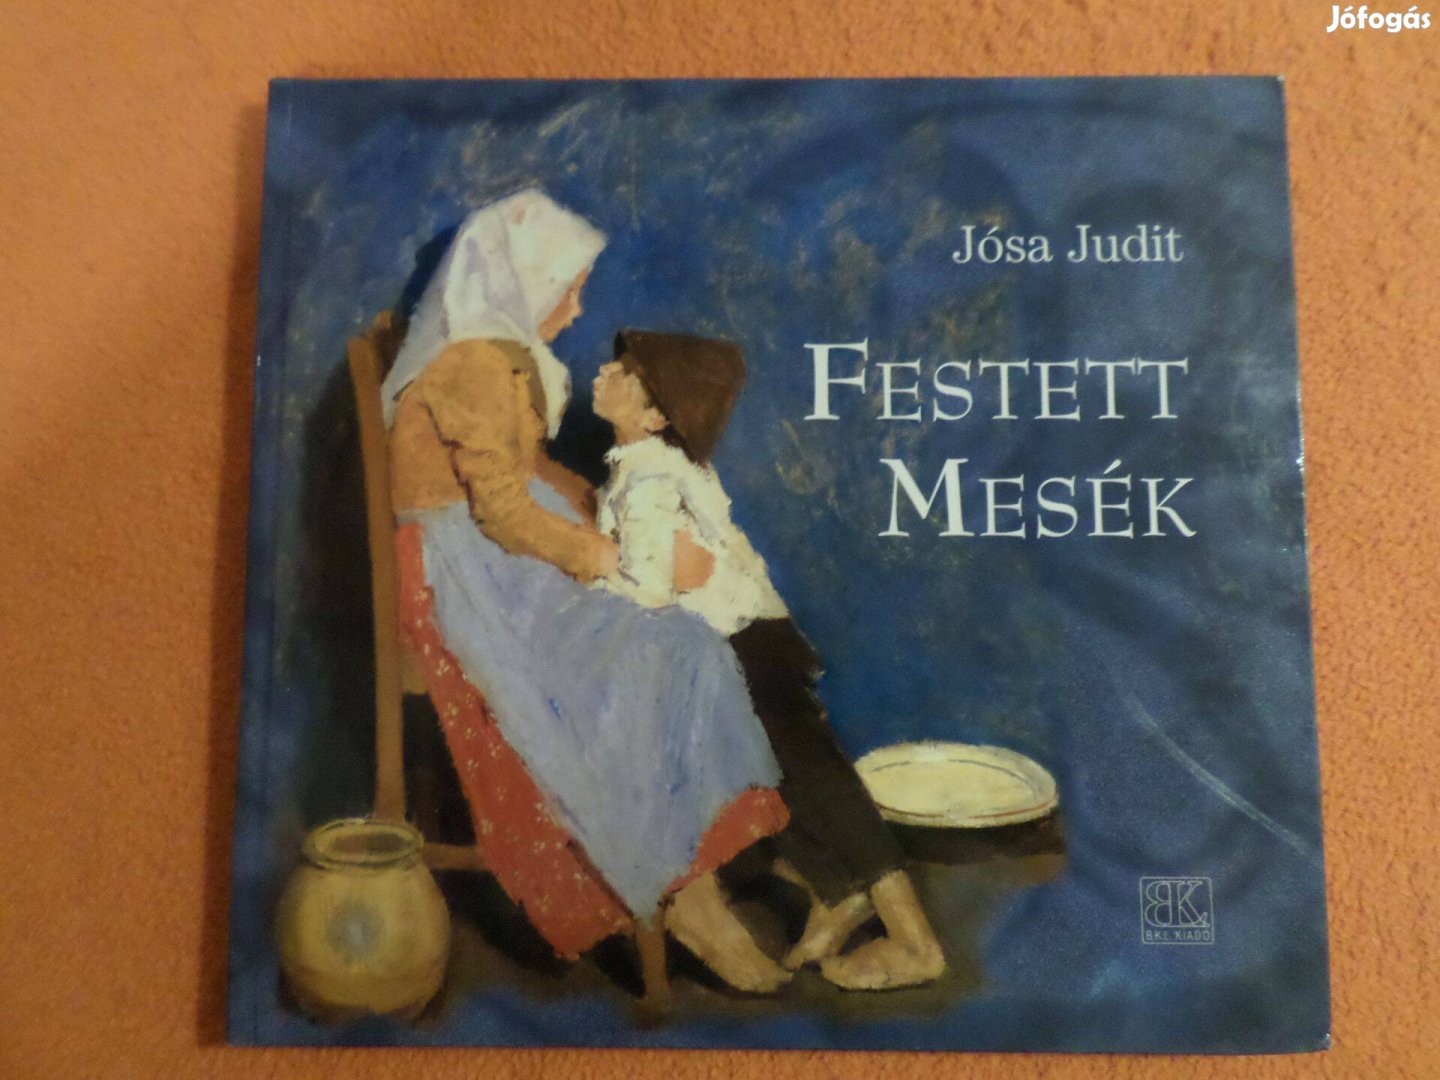 Jósa Judit Festett mesék, 2008, Gyermekkönyv, meséskönyv